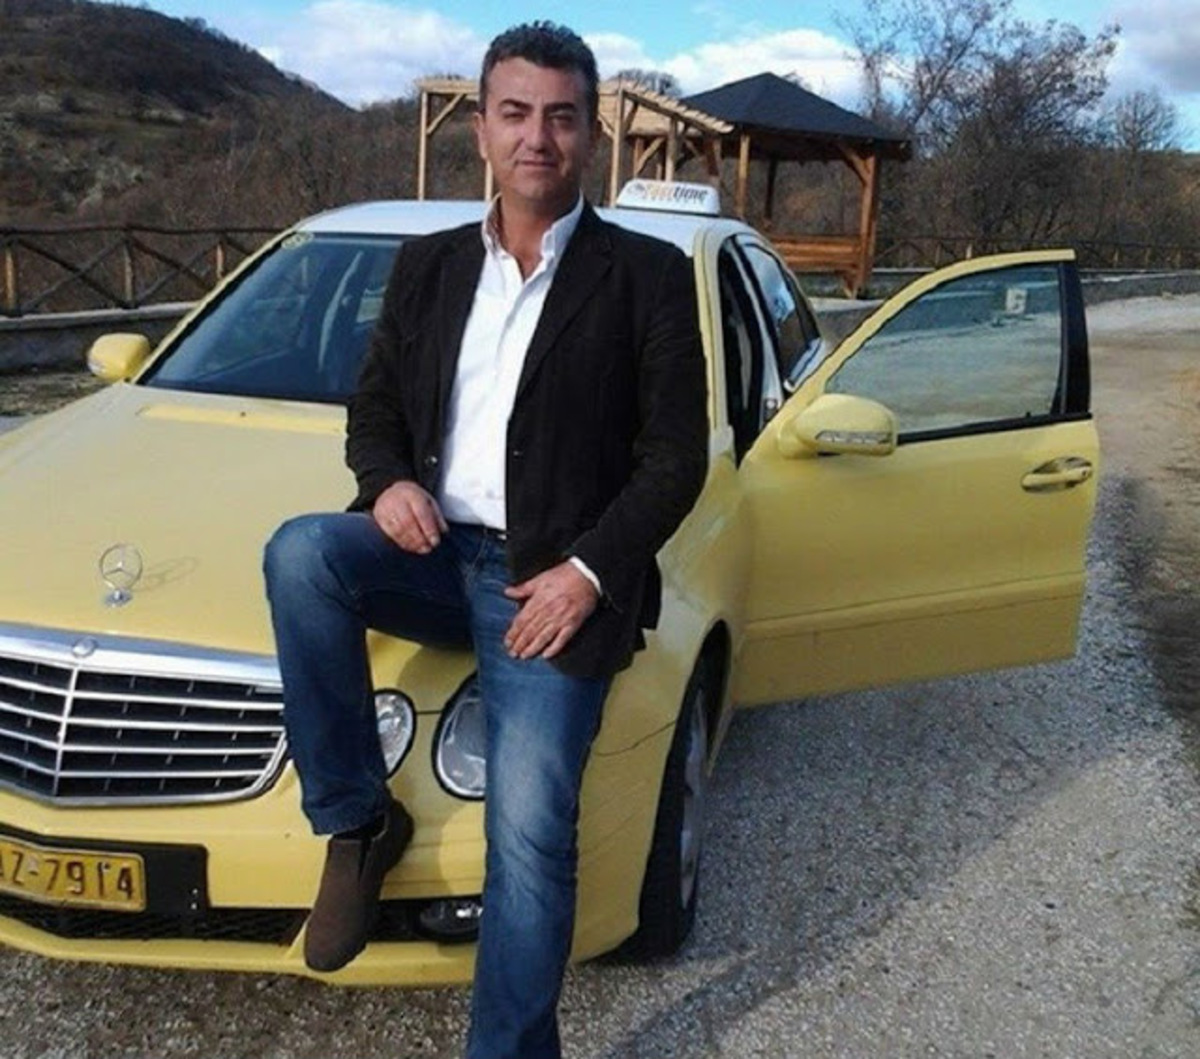 Καστοριά: Η απολογία του ειδικού φρουρού για τη δολοφονία του ταξιτζή – “Το έχω μετανιώσει”!